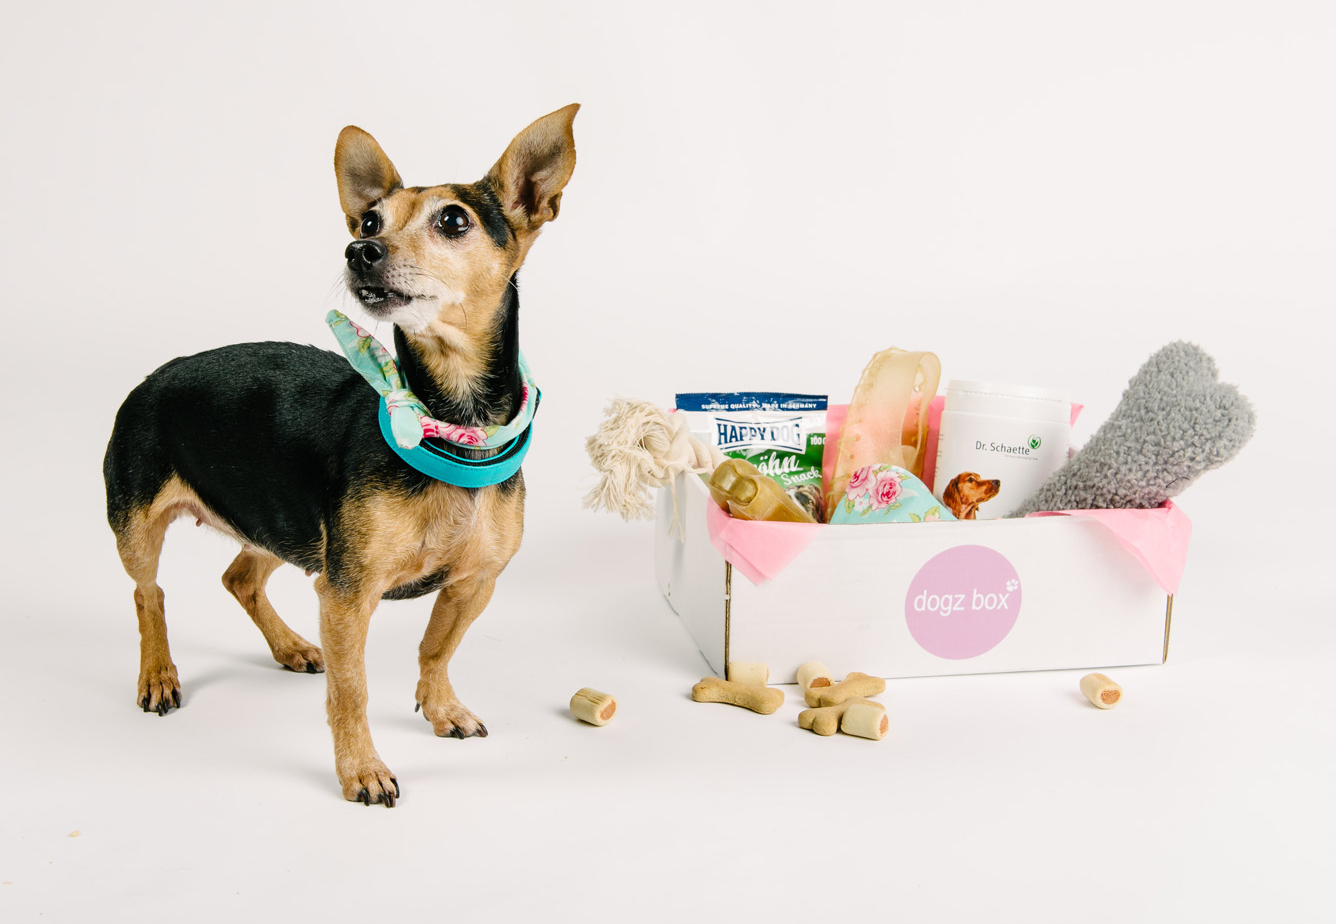 Überraschung im Abo – Dogz box will mit Hunde-Boxen durchstarten